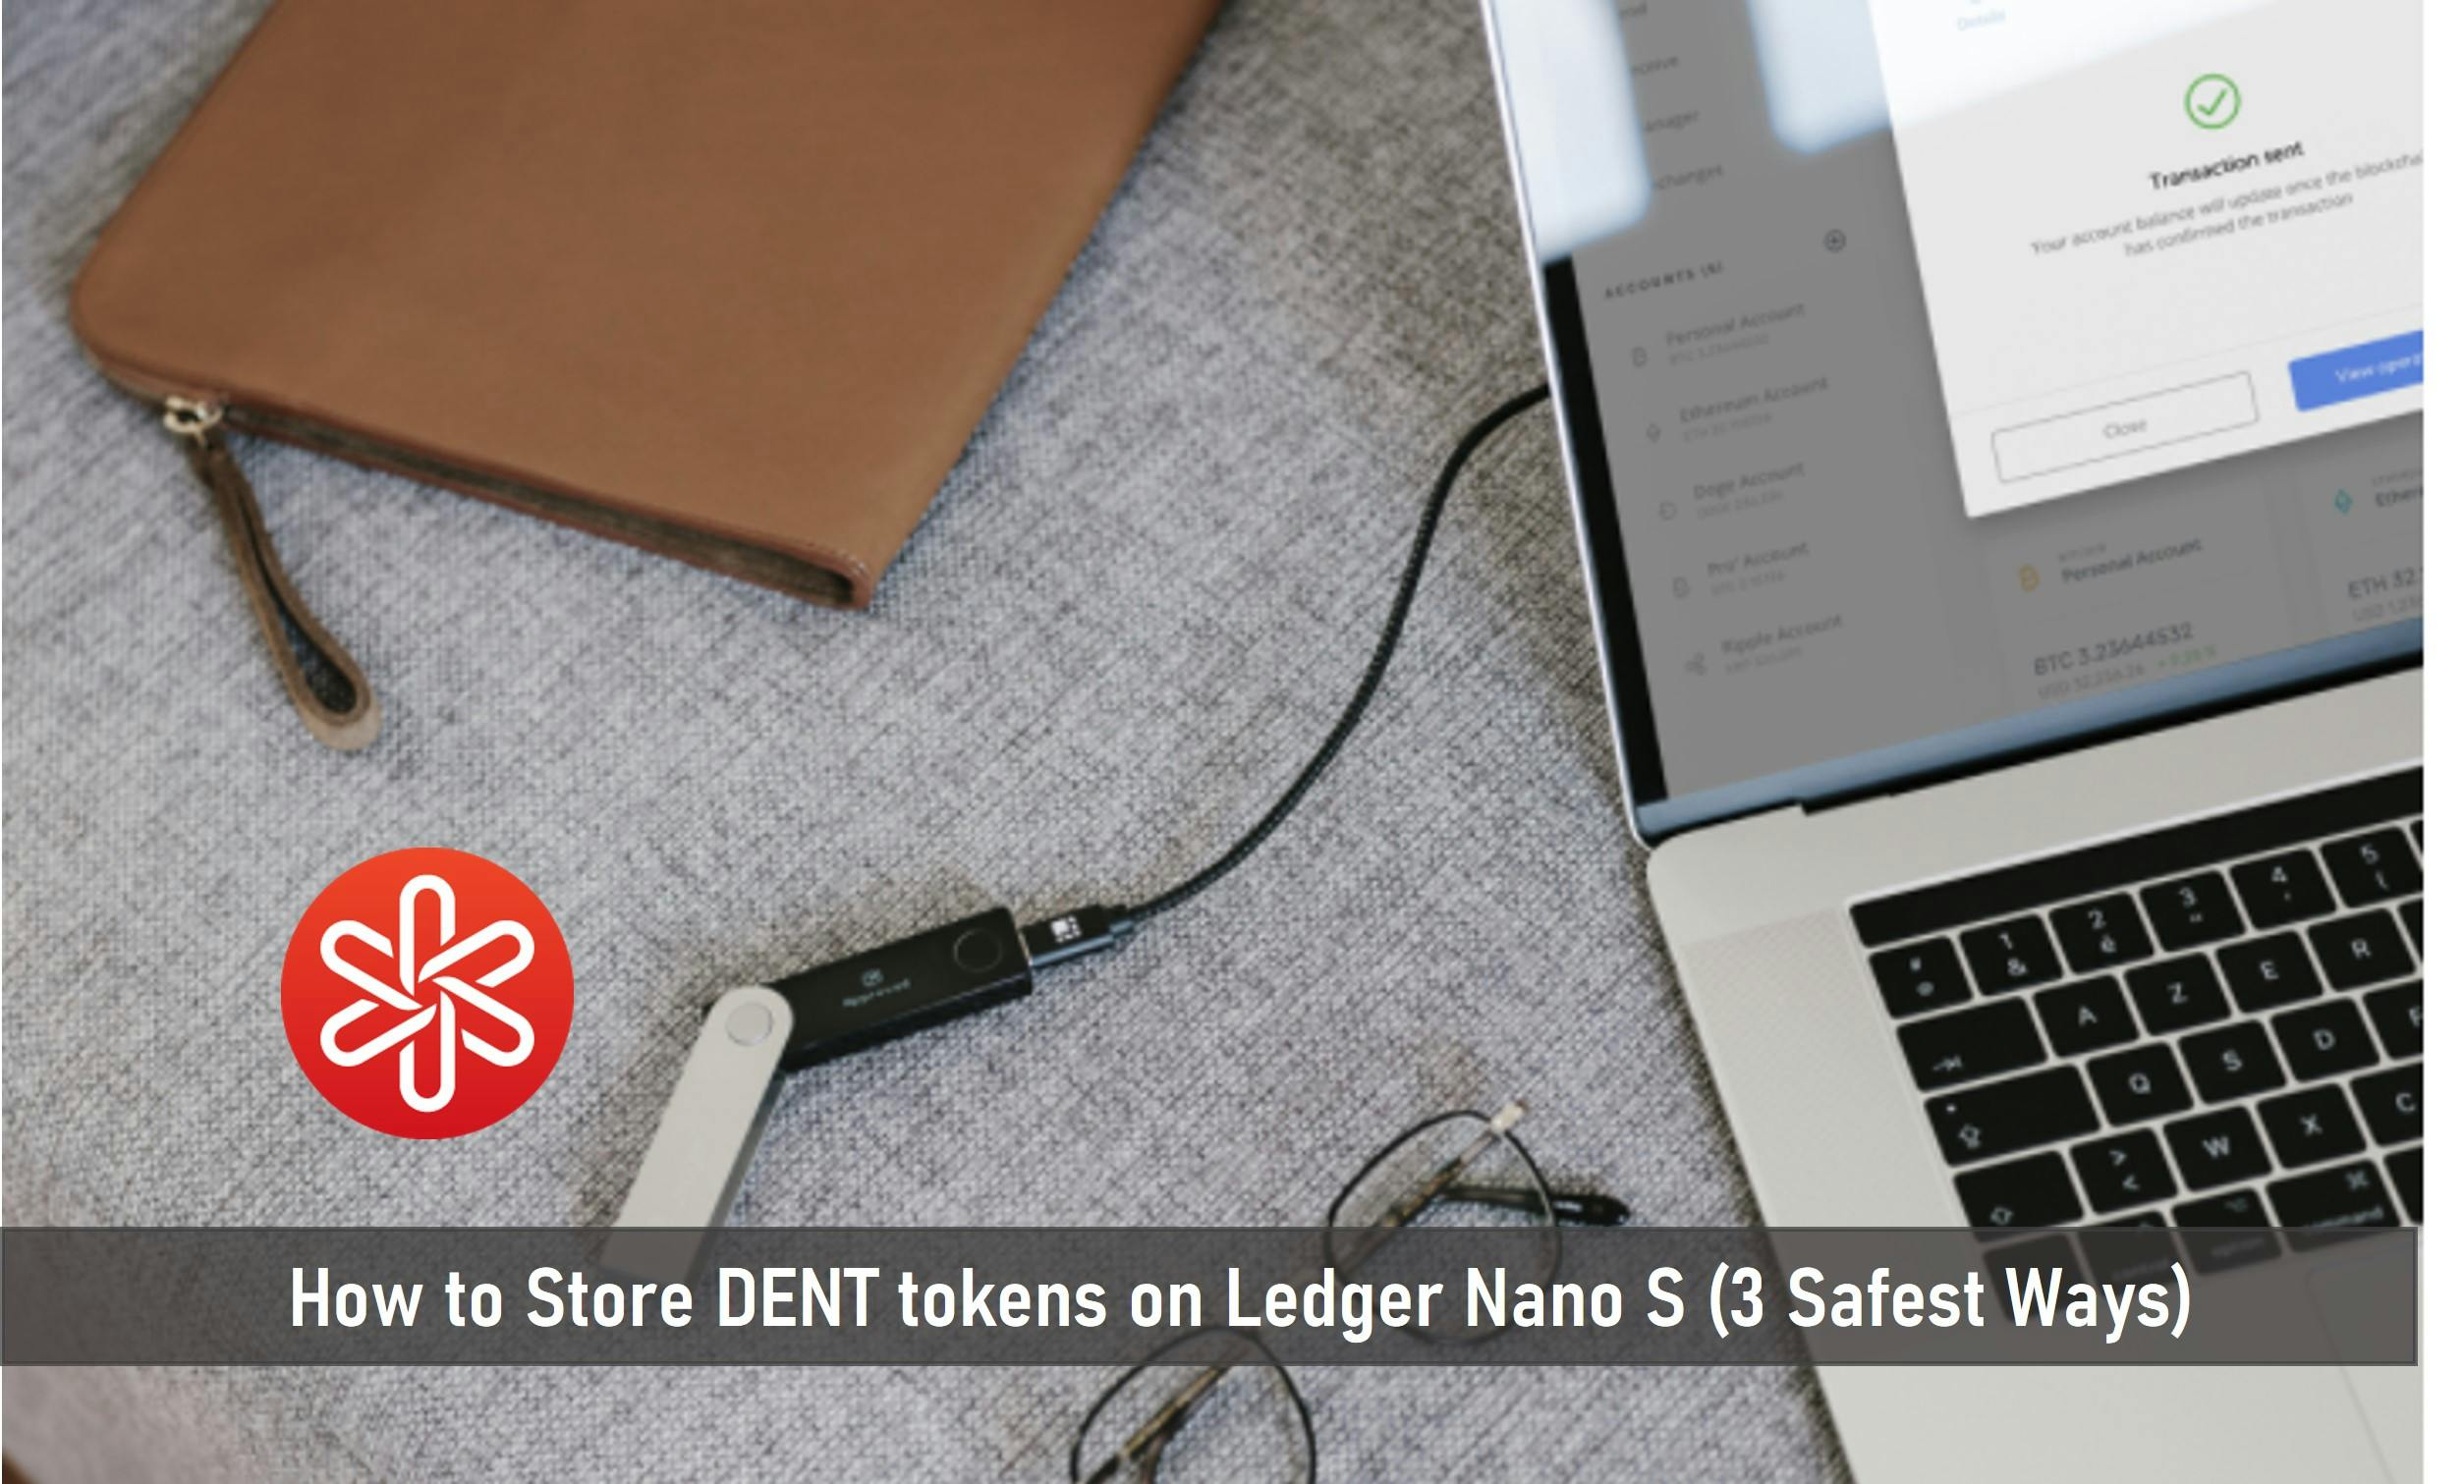 How to Store DENT tokens on Ledger Nano S (3 Safest Ways)